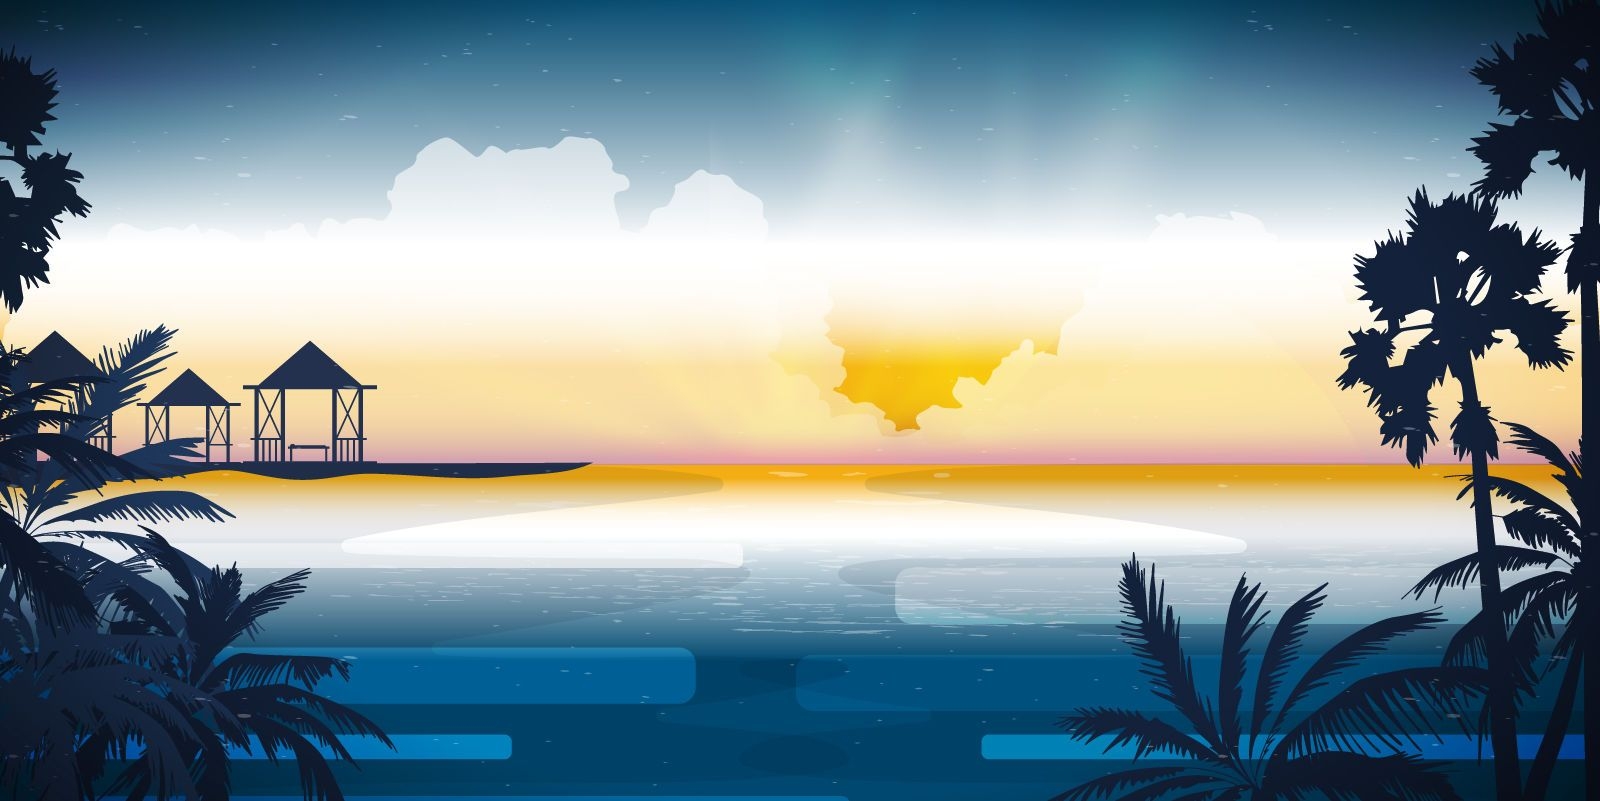 Beautiful beach skyline illustration